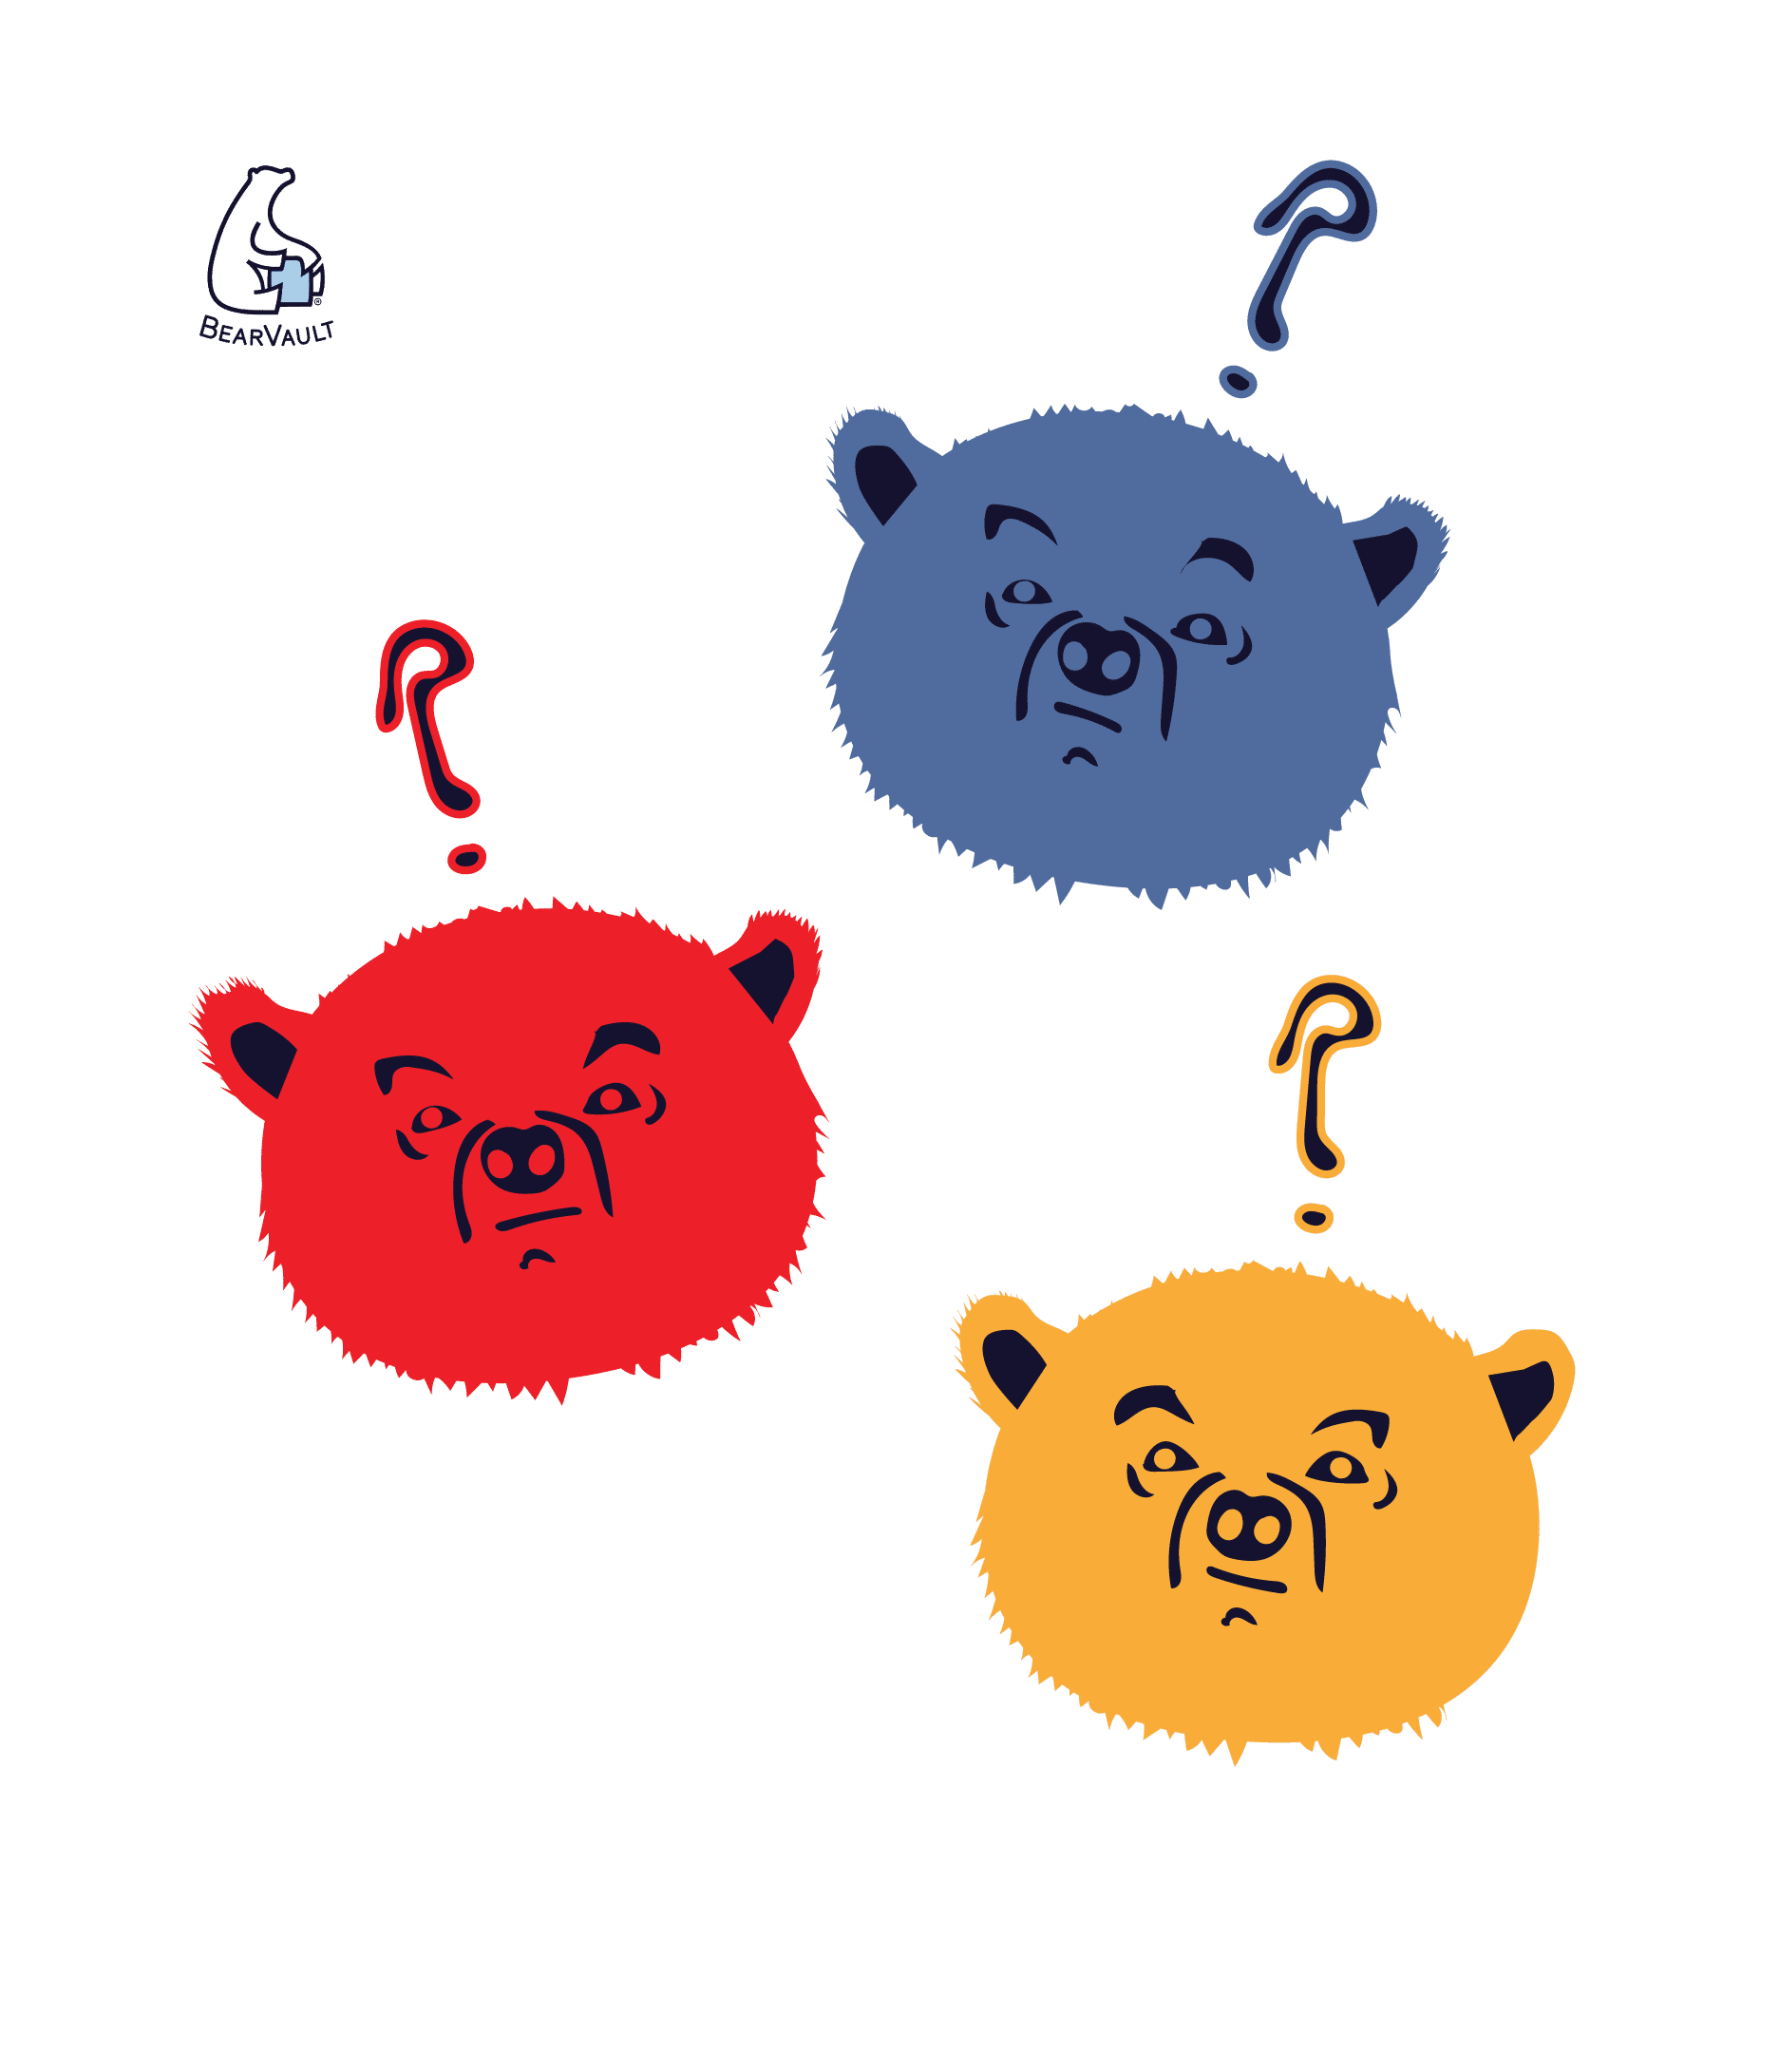 Illustration of 3 cartoon bears looking confused.